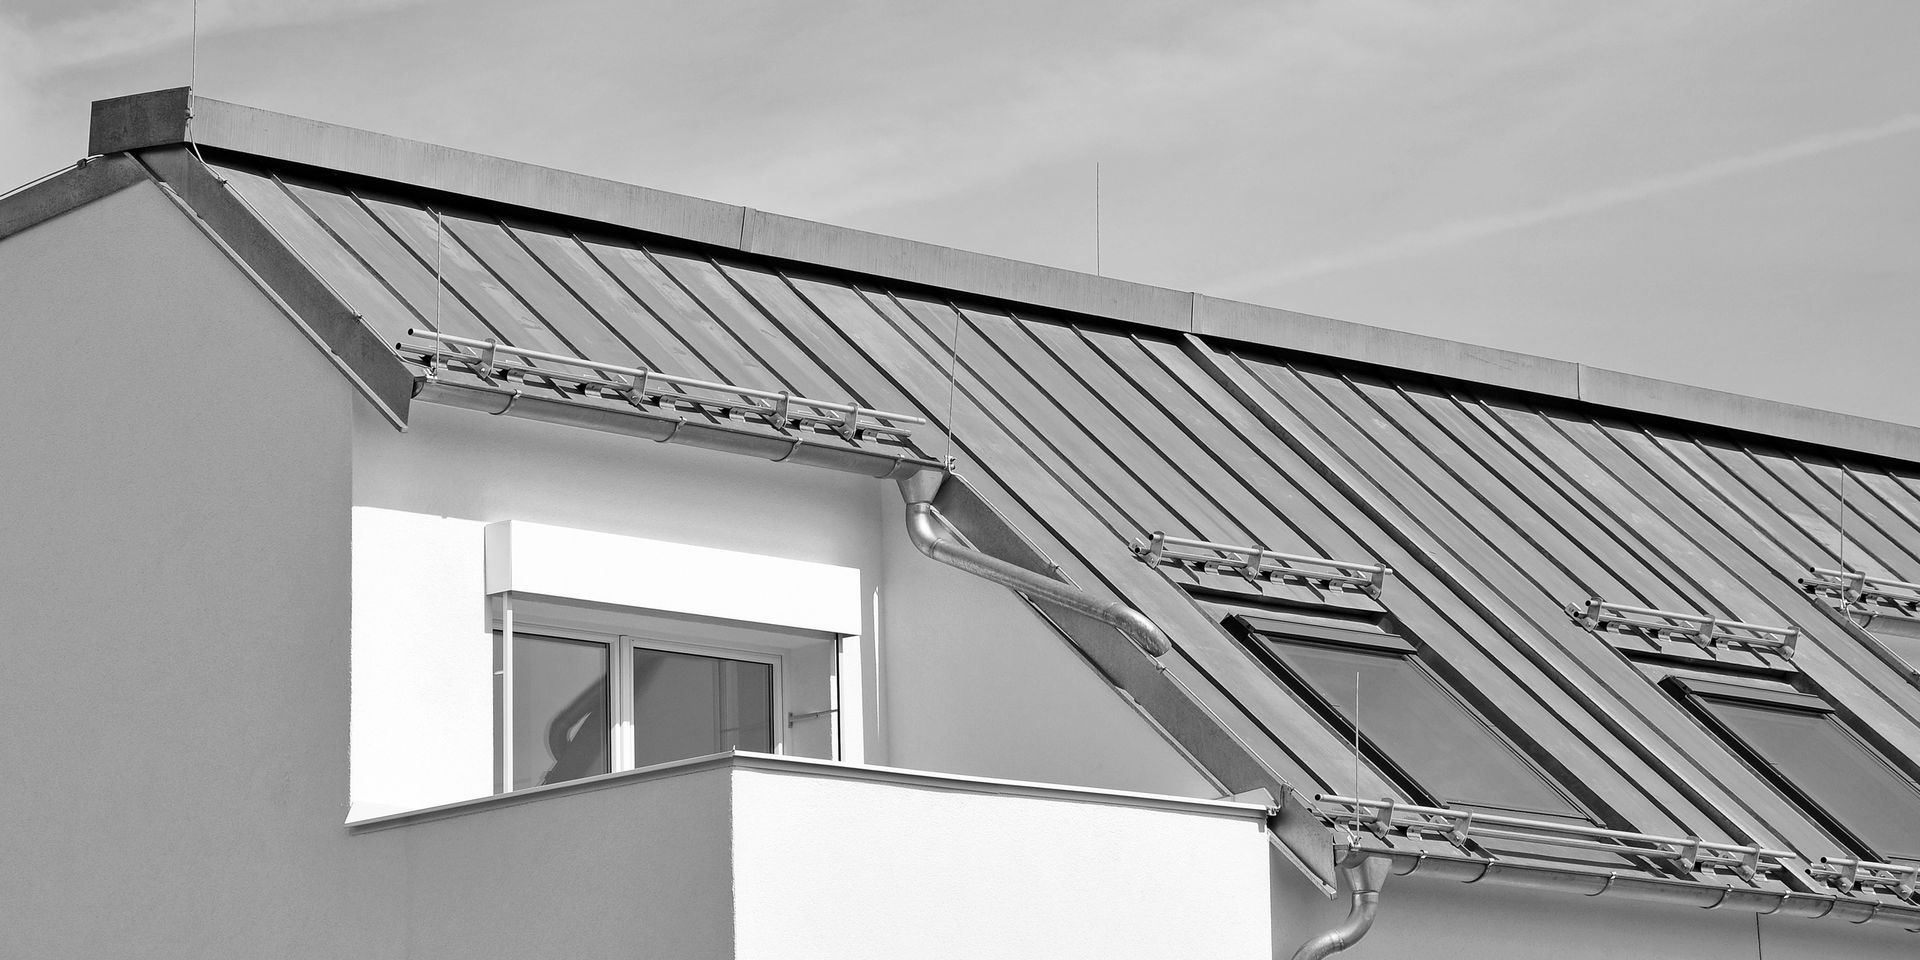 Une photo en noir et blanc d'une maison avec un toit en métal.